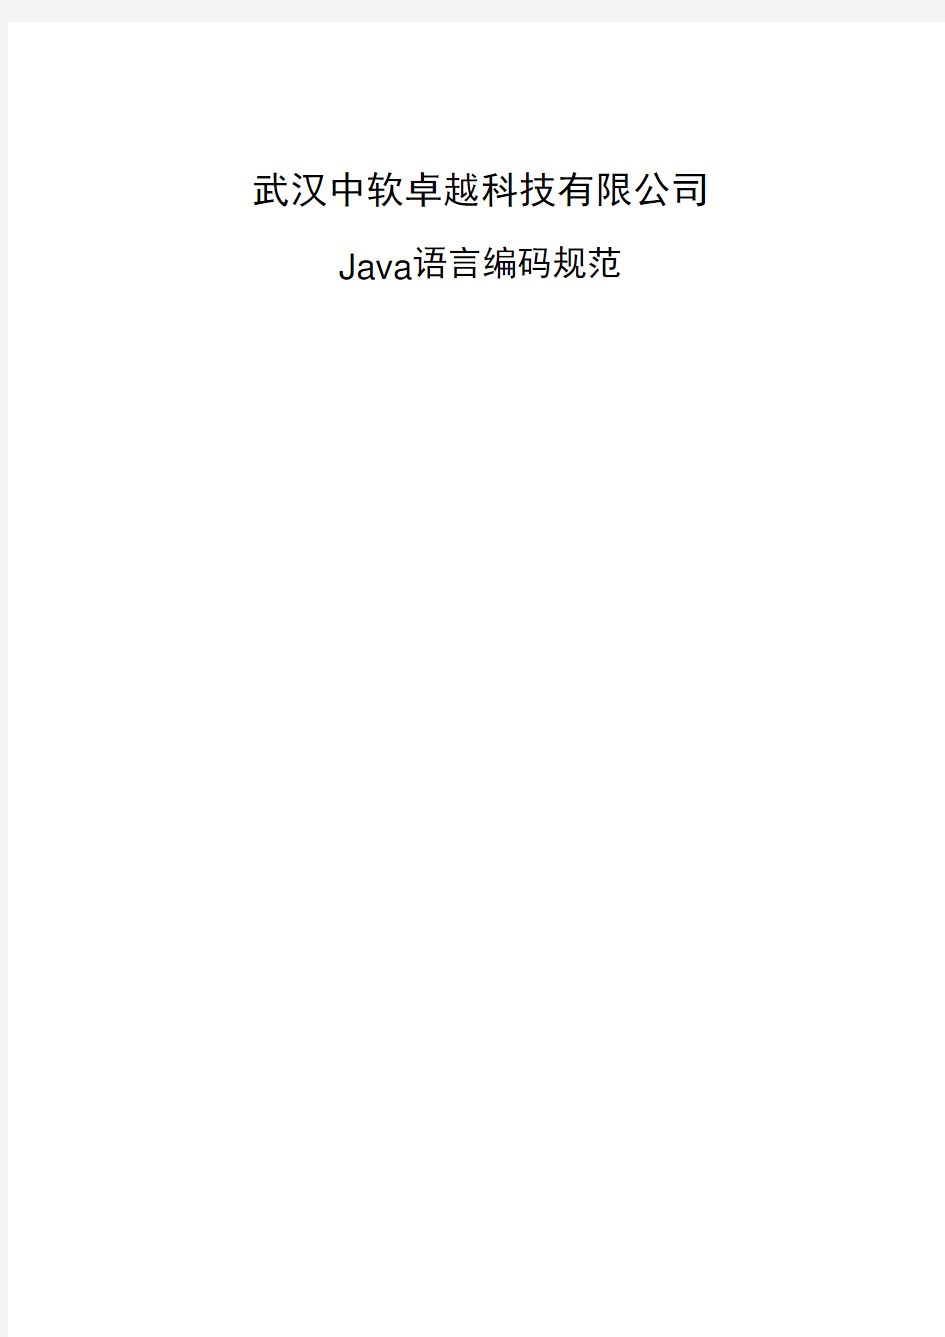 java编码规范(建议稿,修改自华为规范)(1)解析